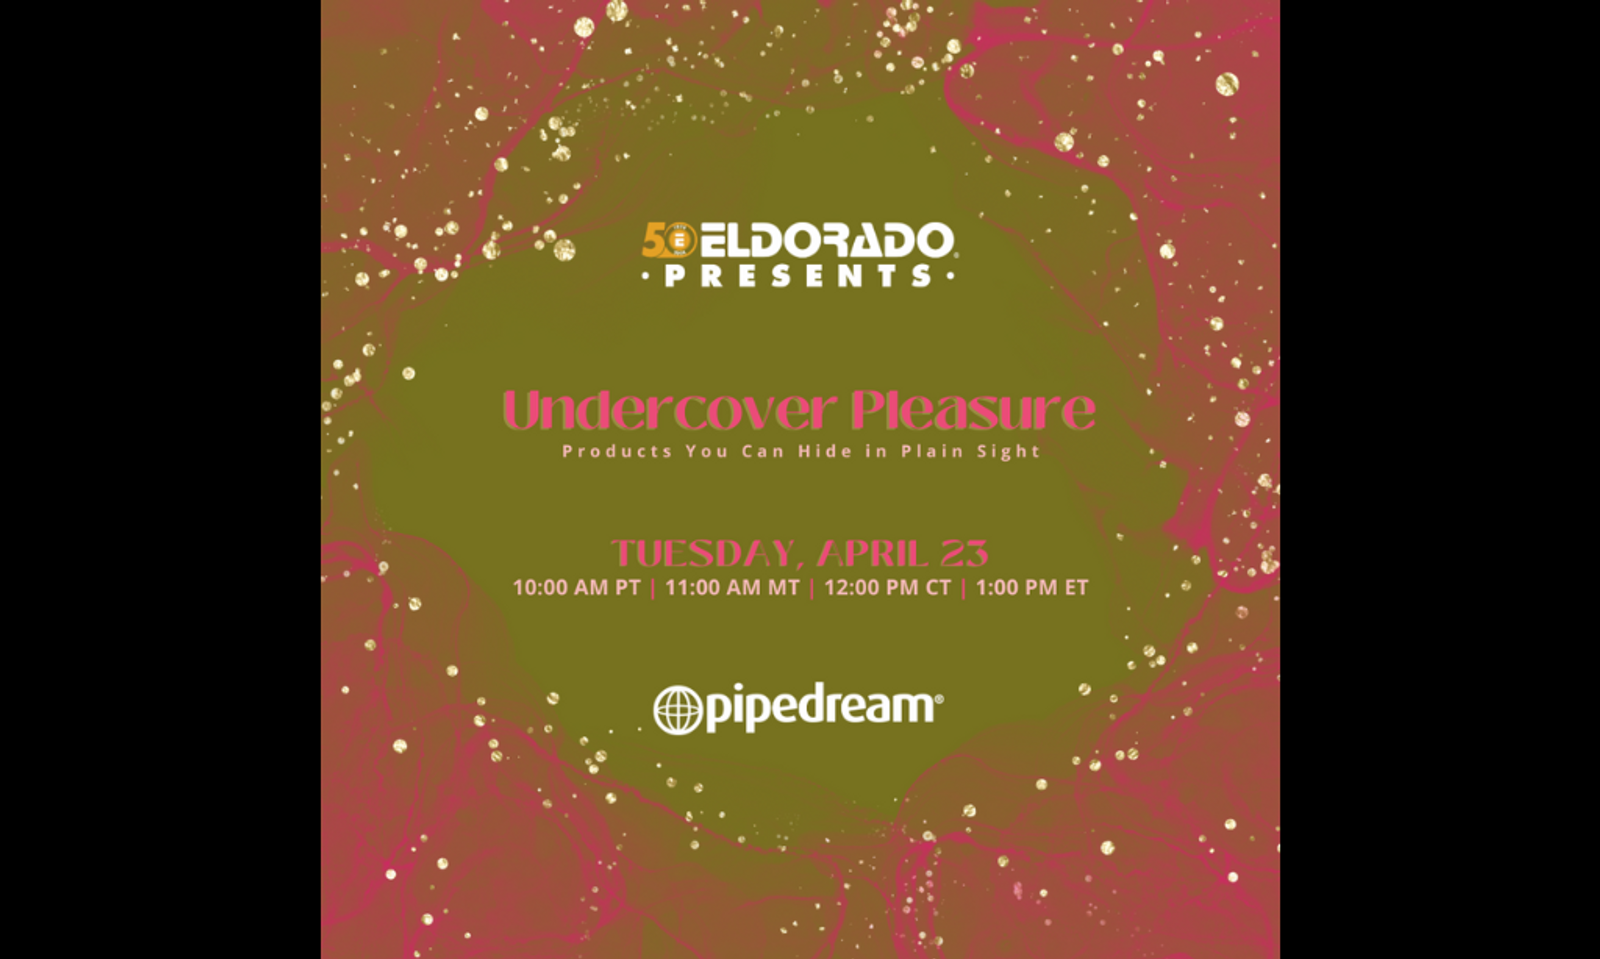 Eldorado to Host New Facebook Live Event With Pipedream, April 23